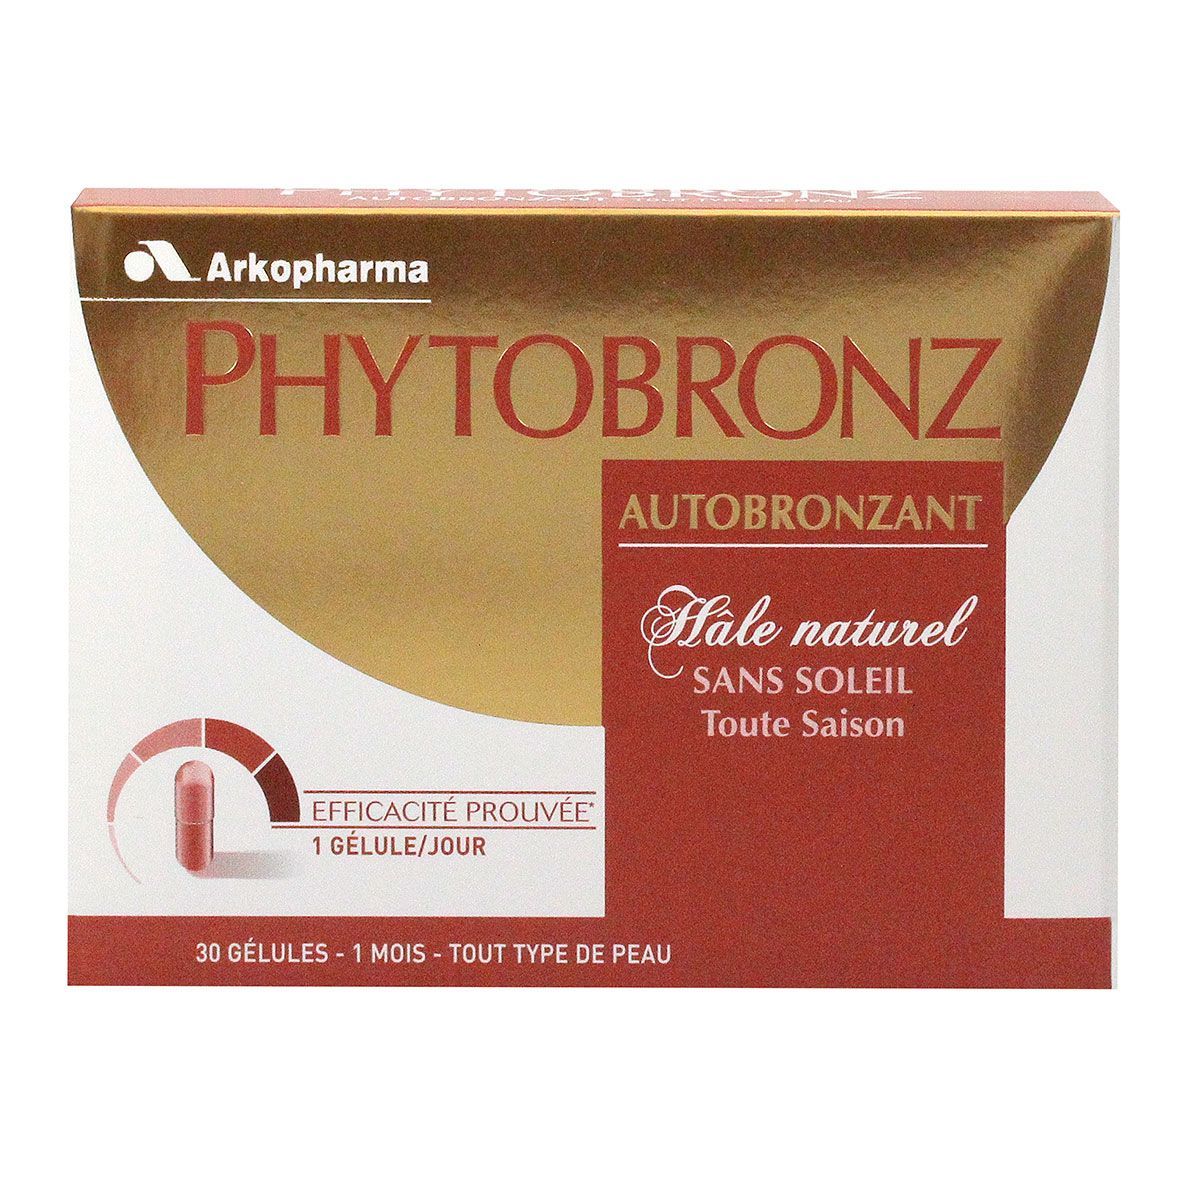 Phytobronz Autobronzant 30 Gélules